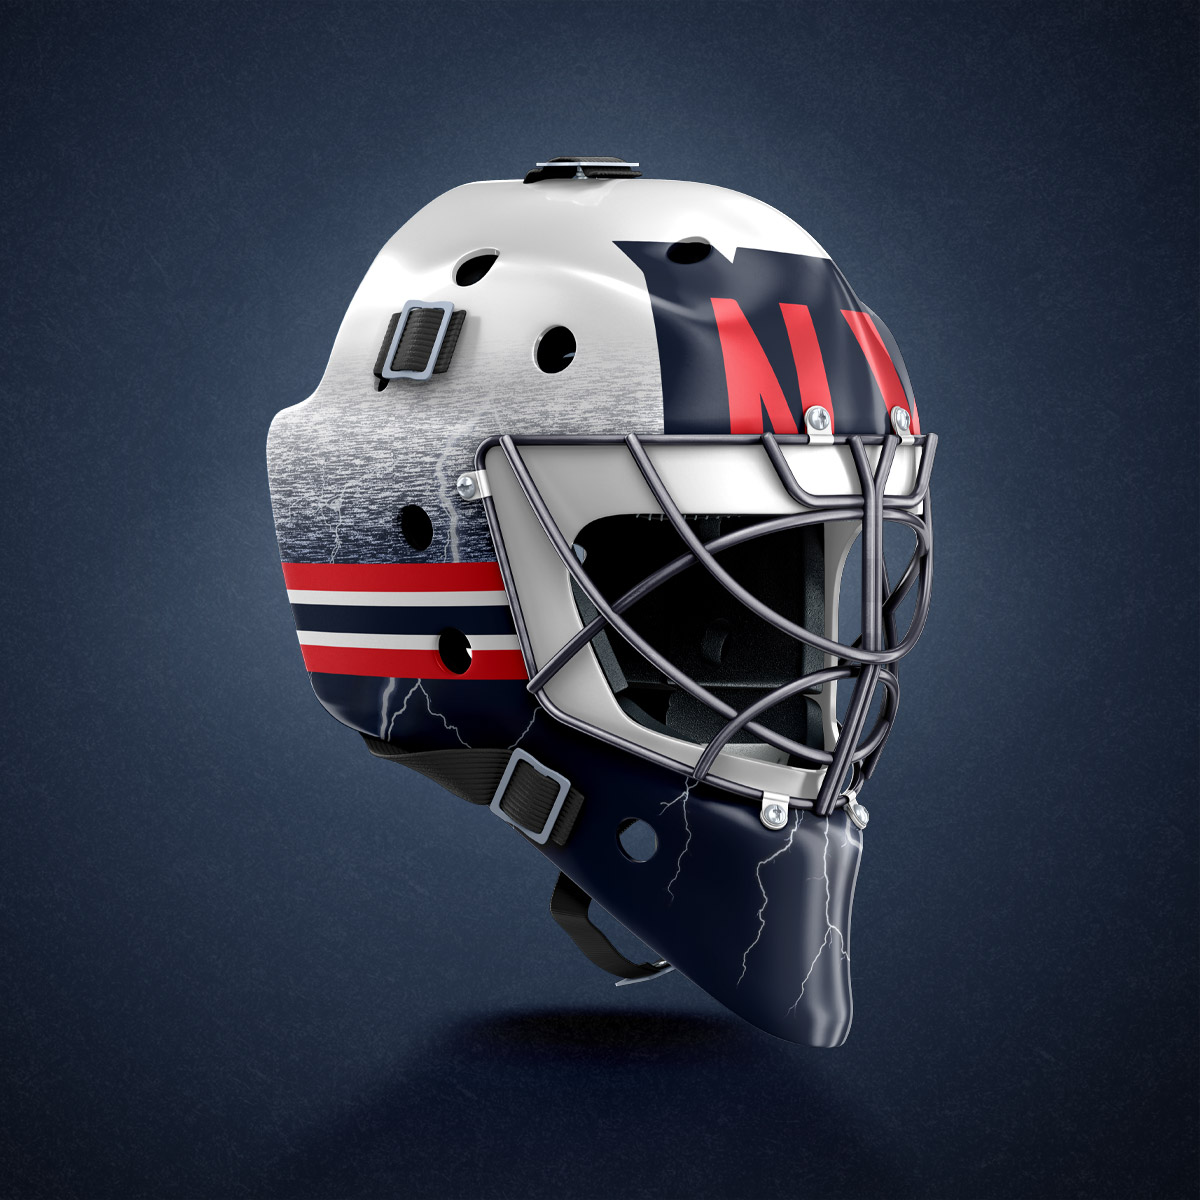 NYR goalie helmet concept